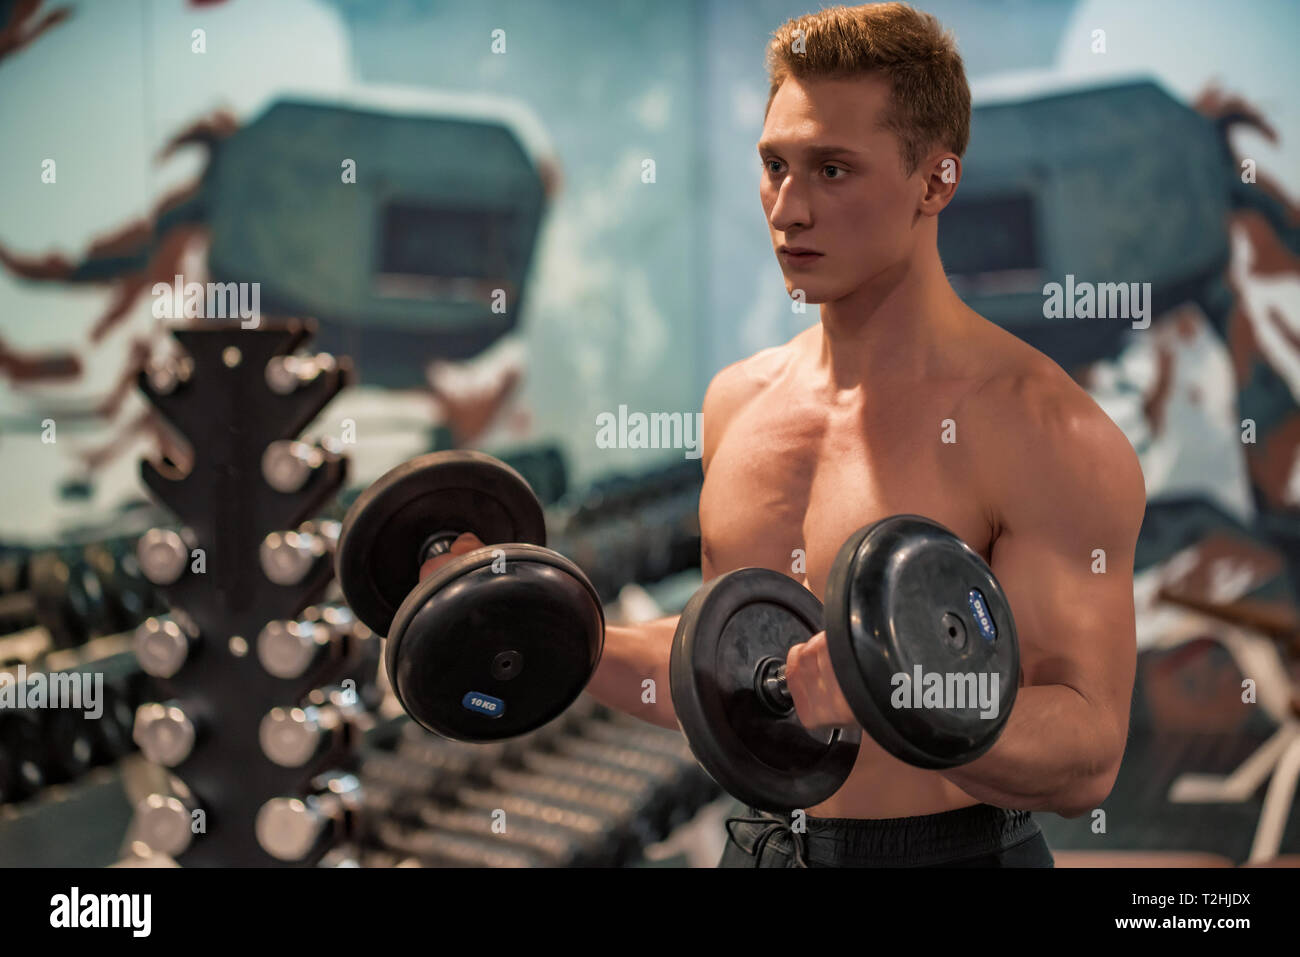 Les trains bodybuilder avec dumbels biceps. La condition physique et du concept crossfit. Close-up Banque D'Images